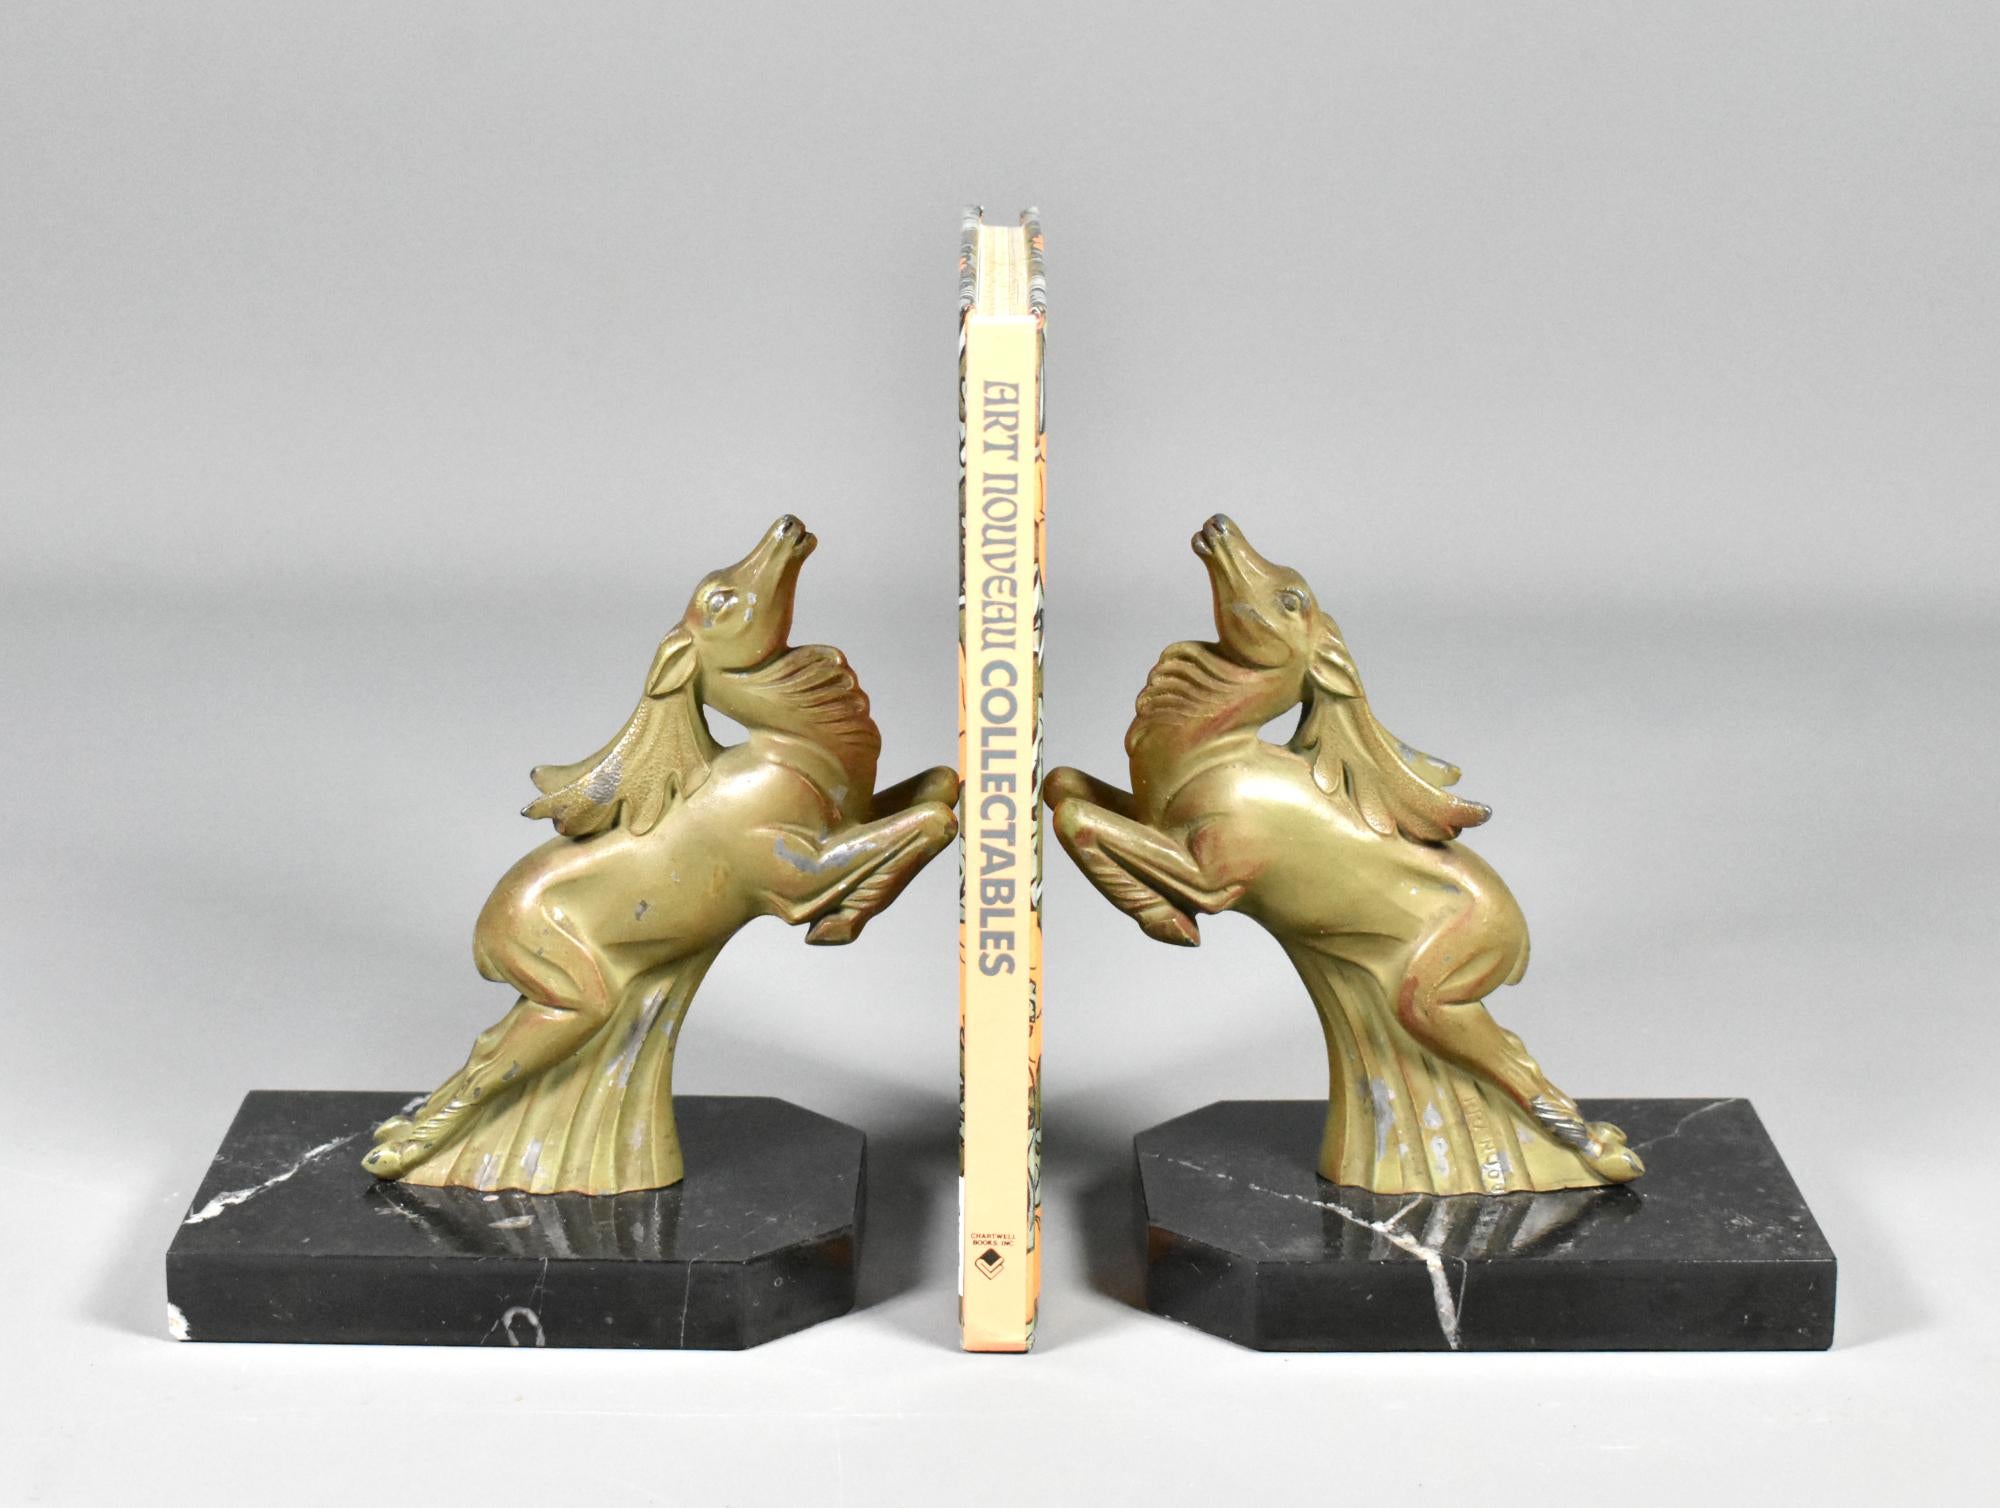 Ein Paar Art-Déco-Buchstützen aus Ibex, signiert Franjou (Hippolyte Moreau) 

Ein attraktives Paar passender Art Deco Buchstützen, signiert Franjou, Pseudonym des berühmten französischen Bildhauers Hippolyte Moreau (1832-1926). 

Moreau studierte